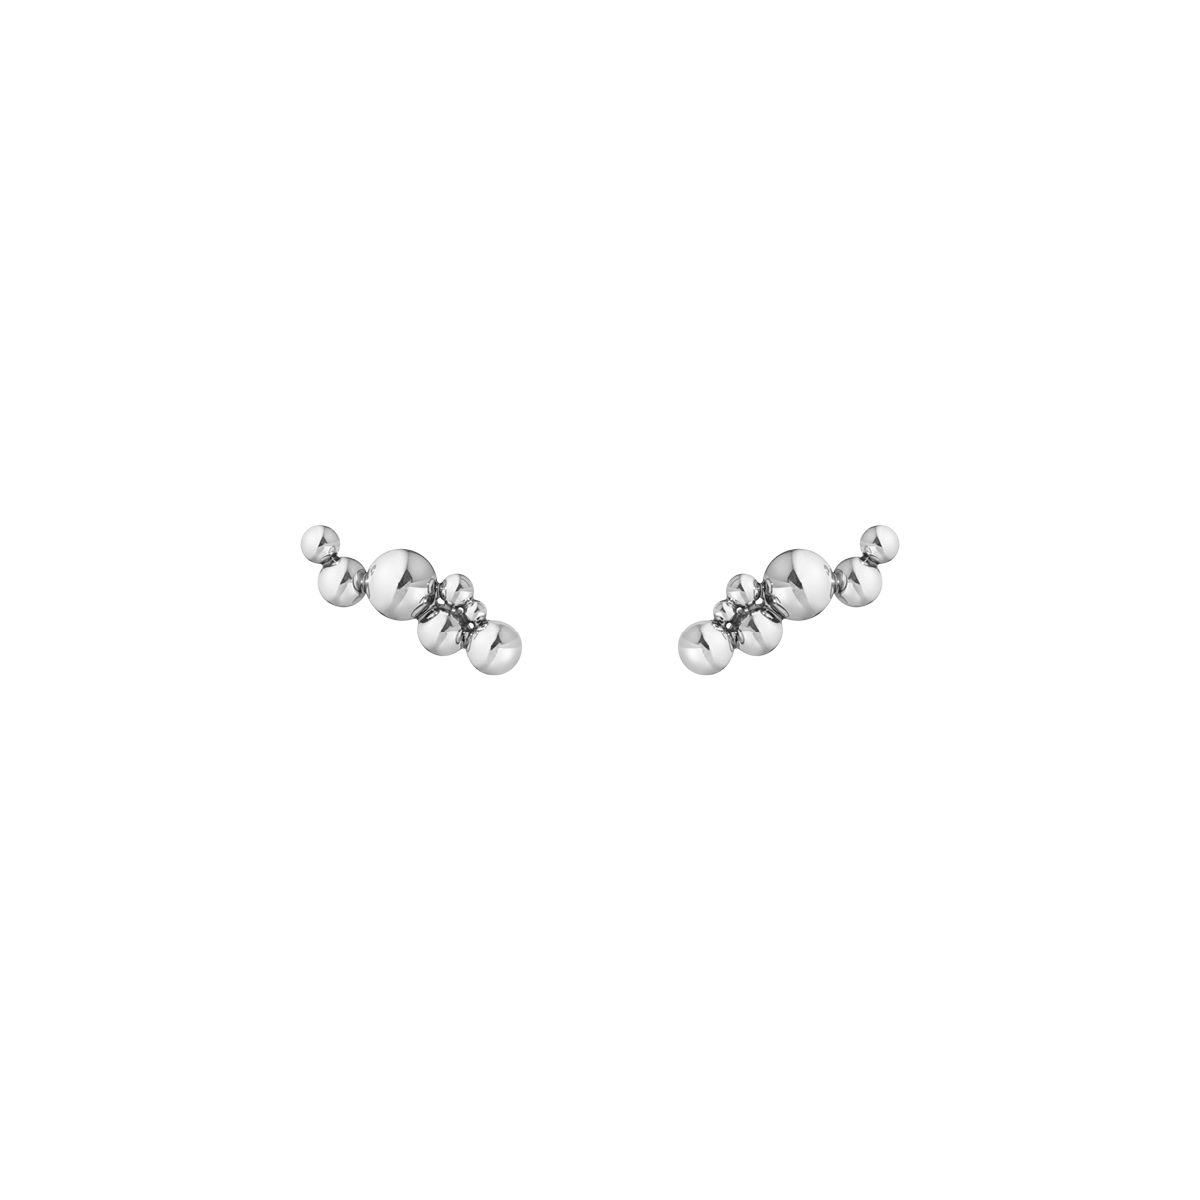 Moonlight Grapes øreringe - oxideret sølv fra Georg Jensen